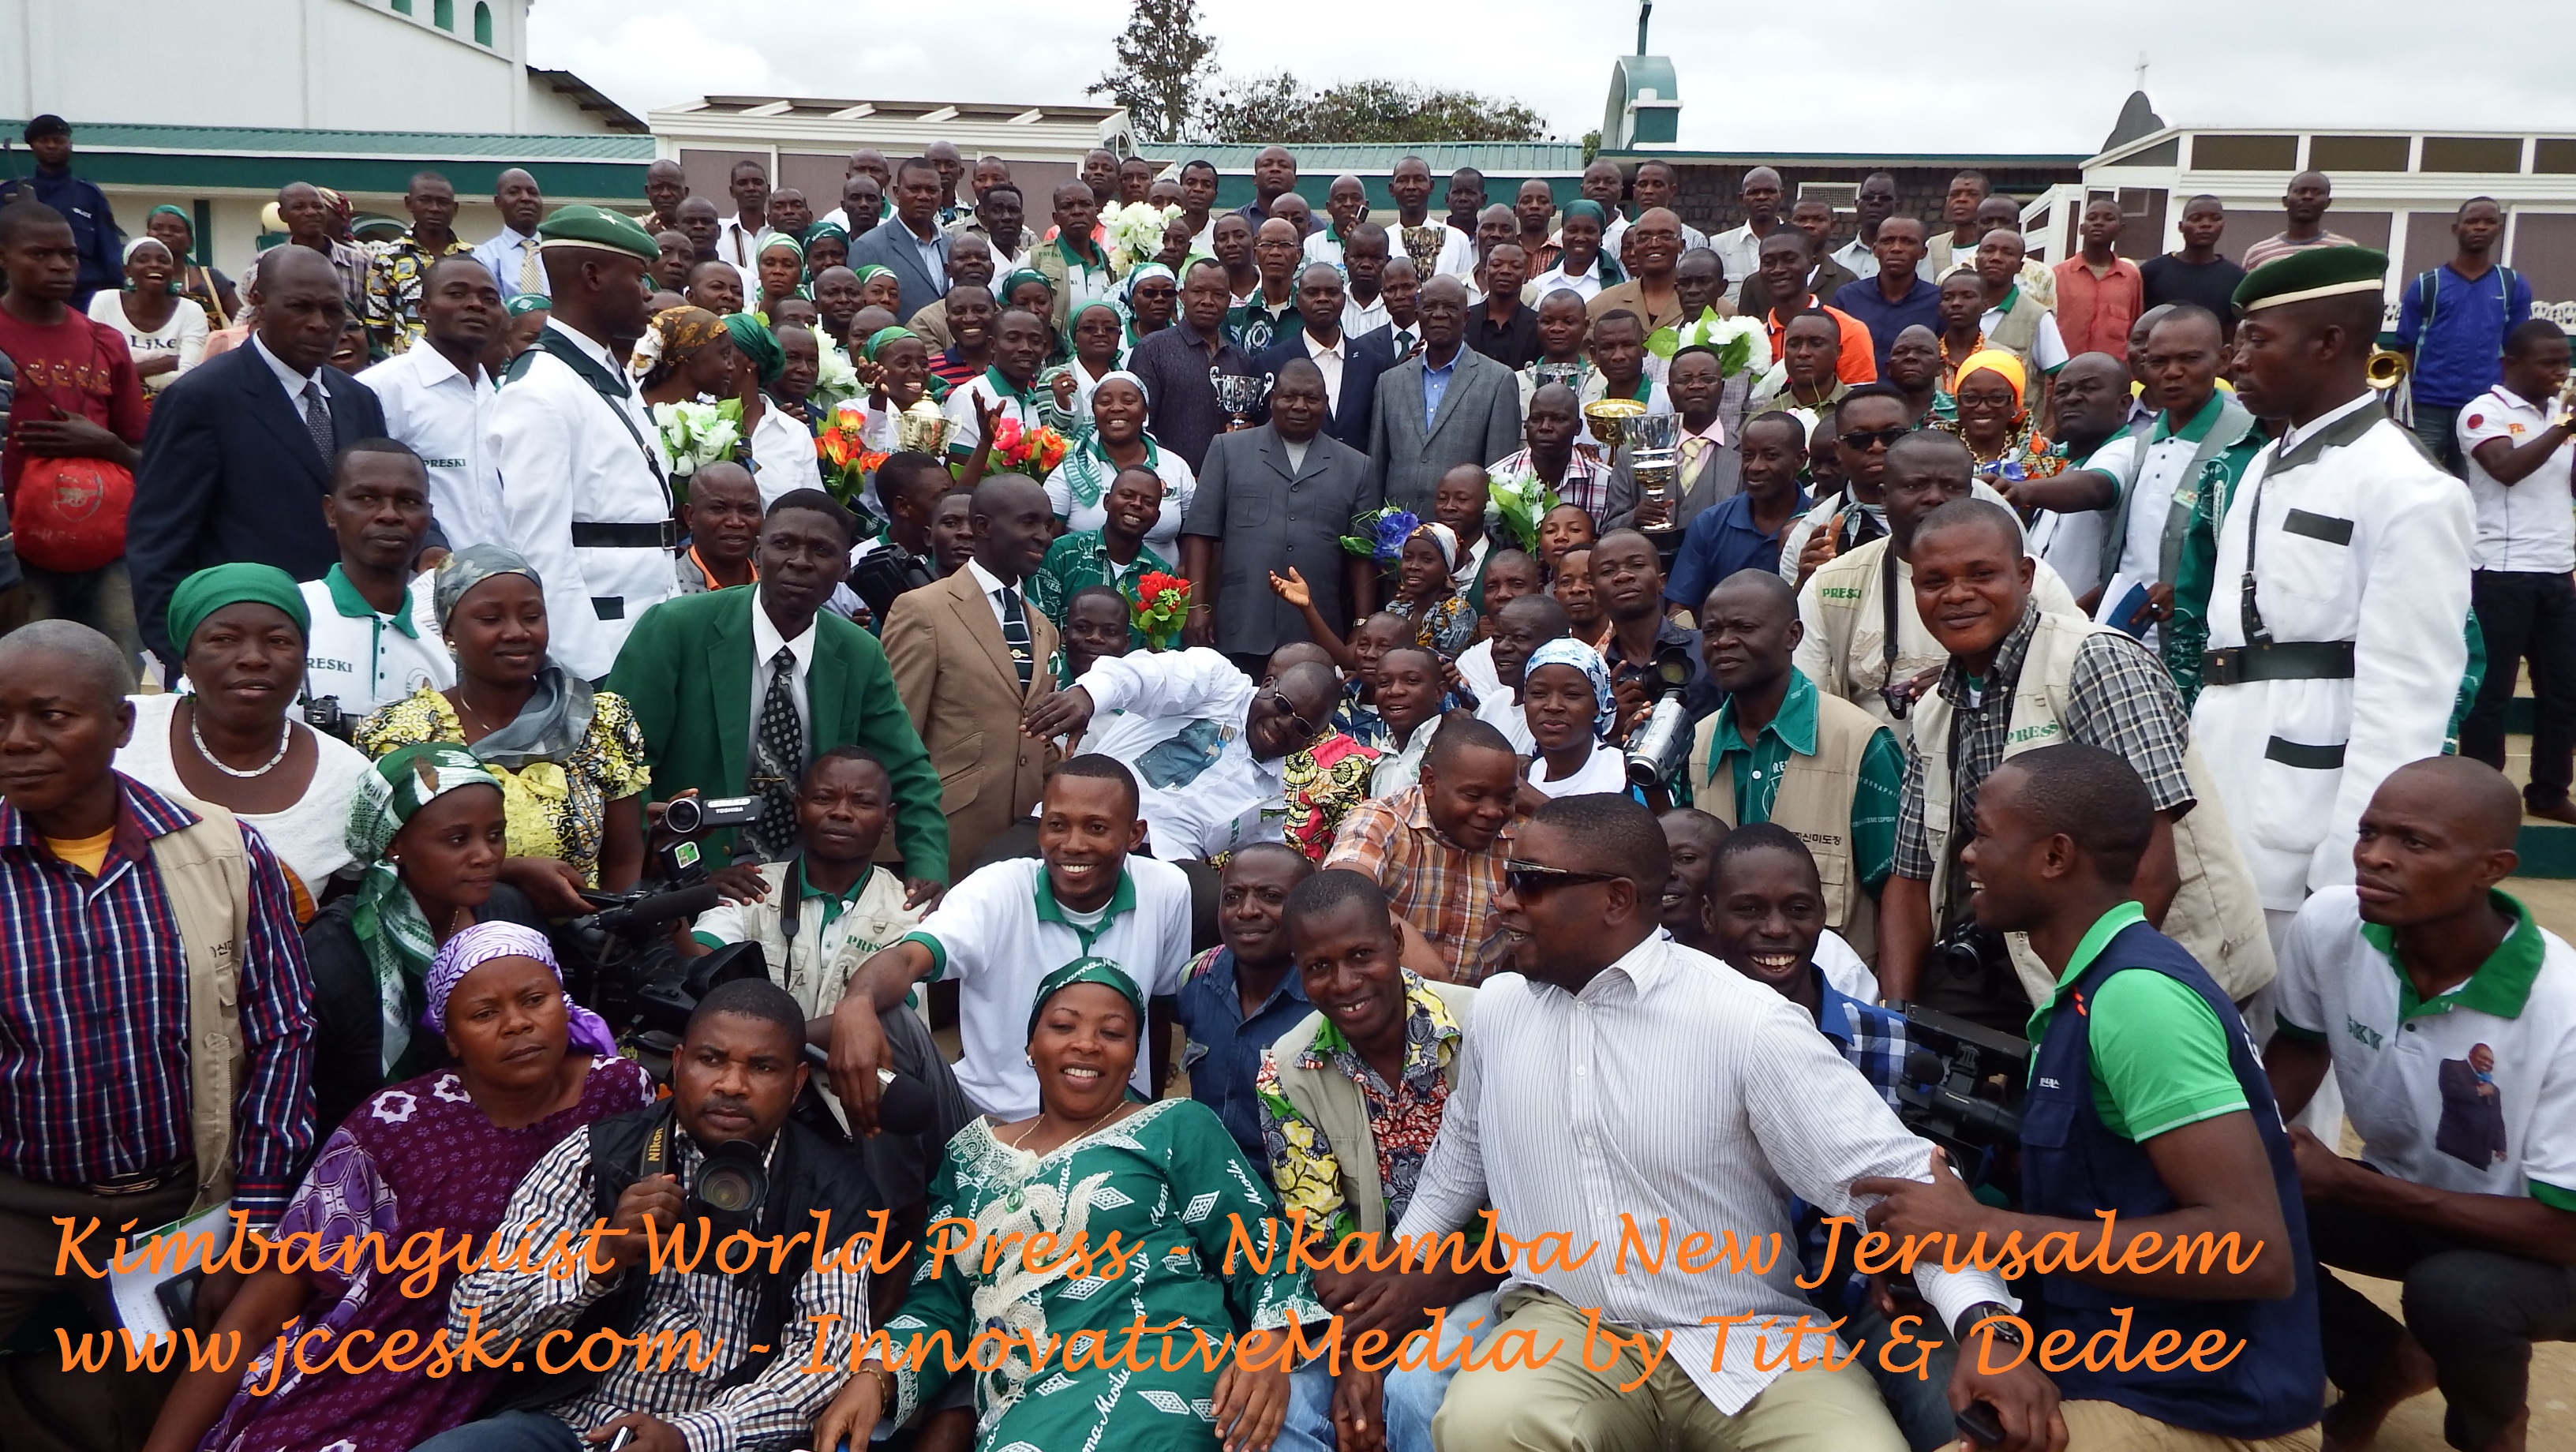 www.jccesk.com-Kimbanguist_World_Press Holy Spirit Papa Simon Kimbangu Kiangani Nkamba New Jerusalem